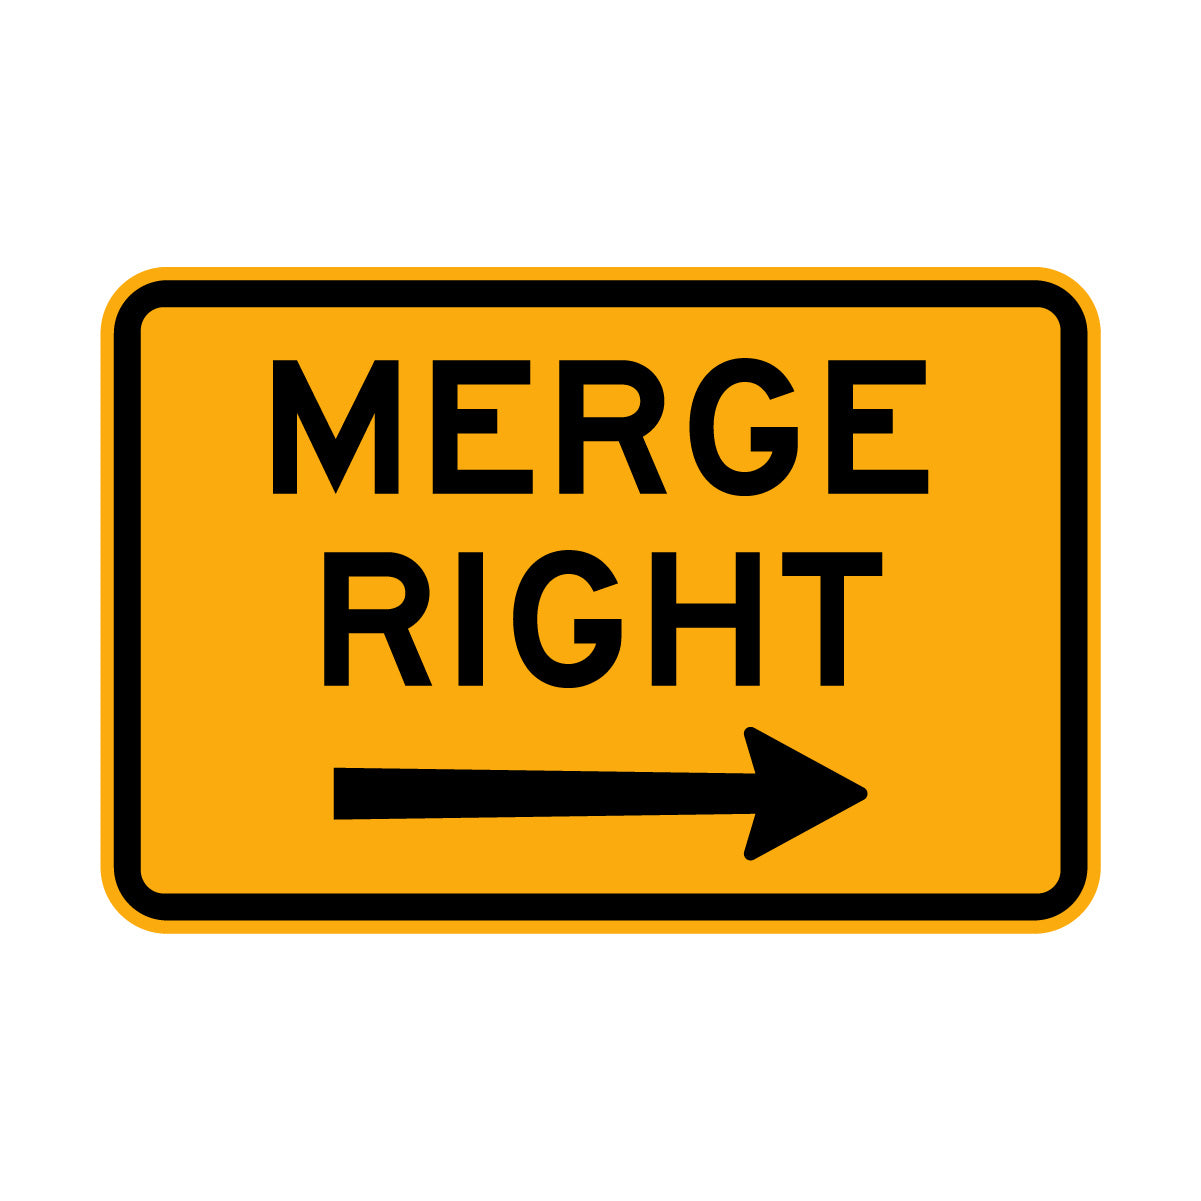 Warning: Merge Sign